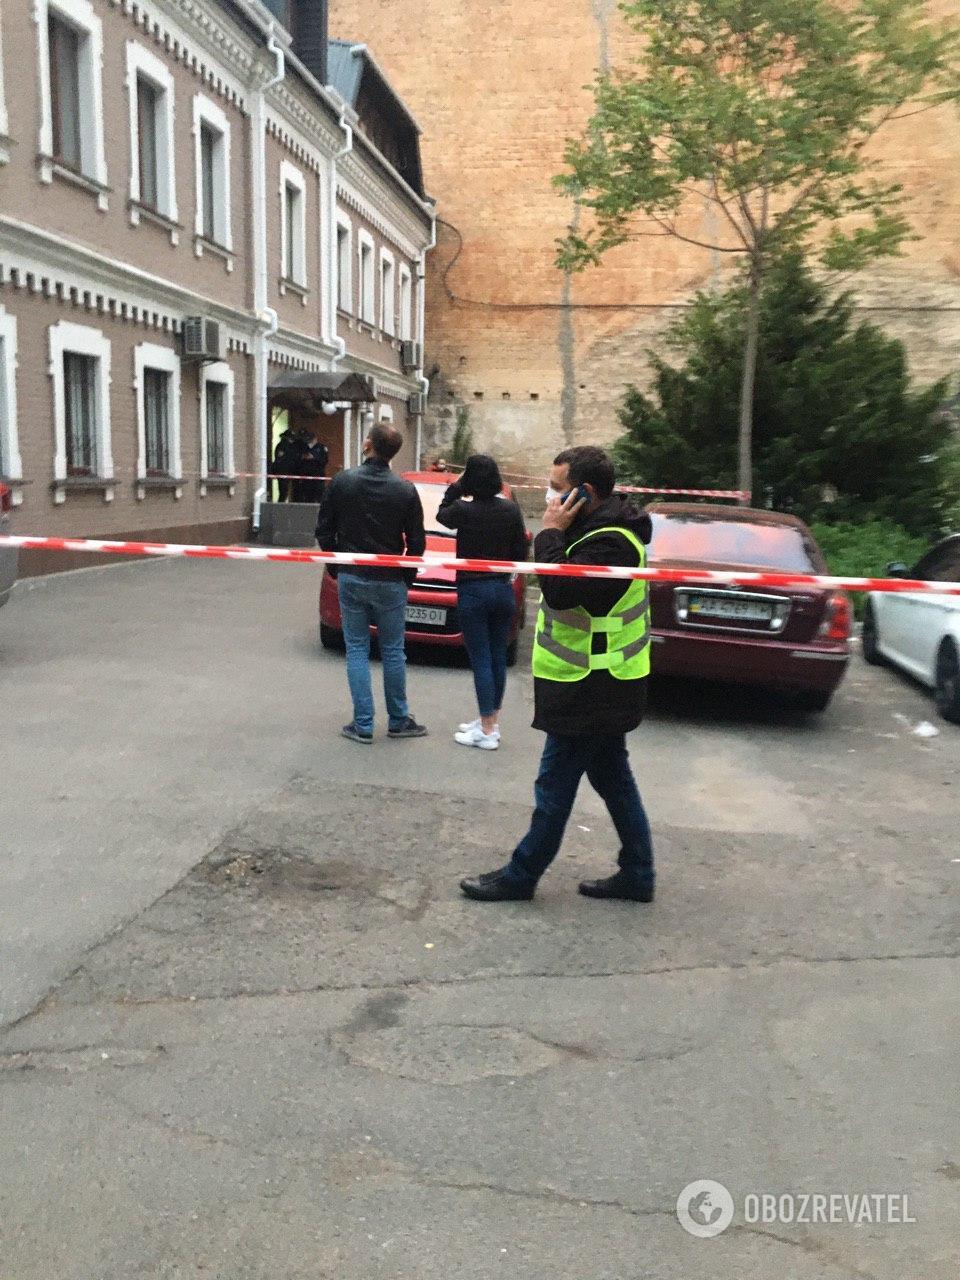 Машина Давыденко была у офиса с самого утра: появились эксклюзивные подробности